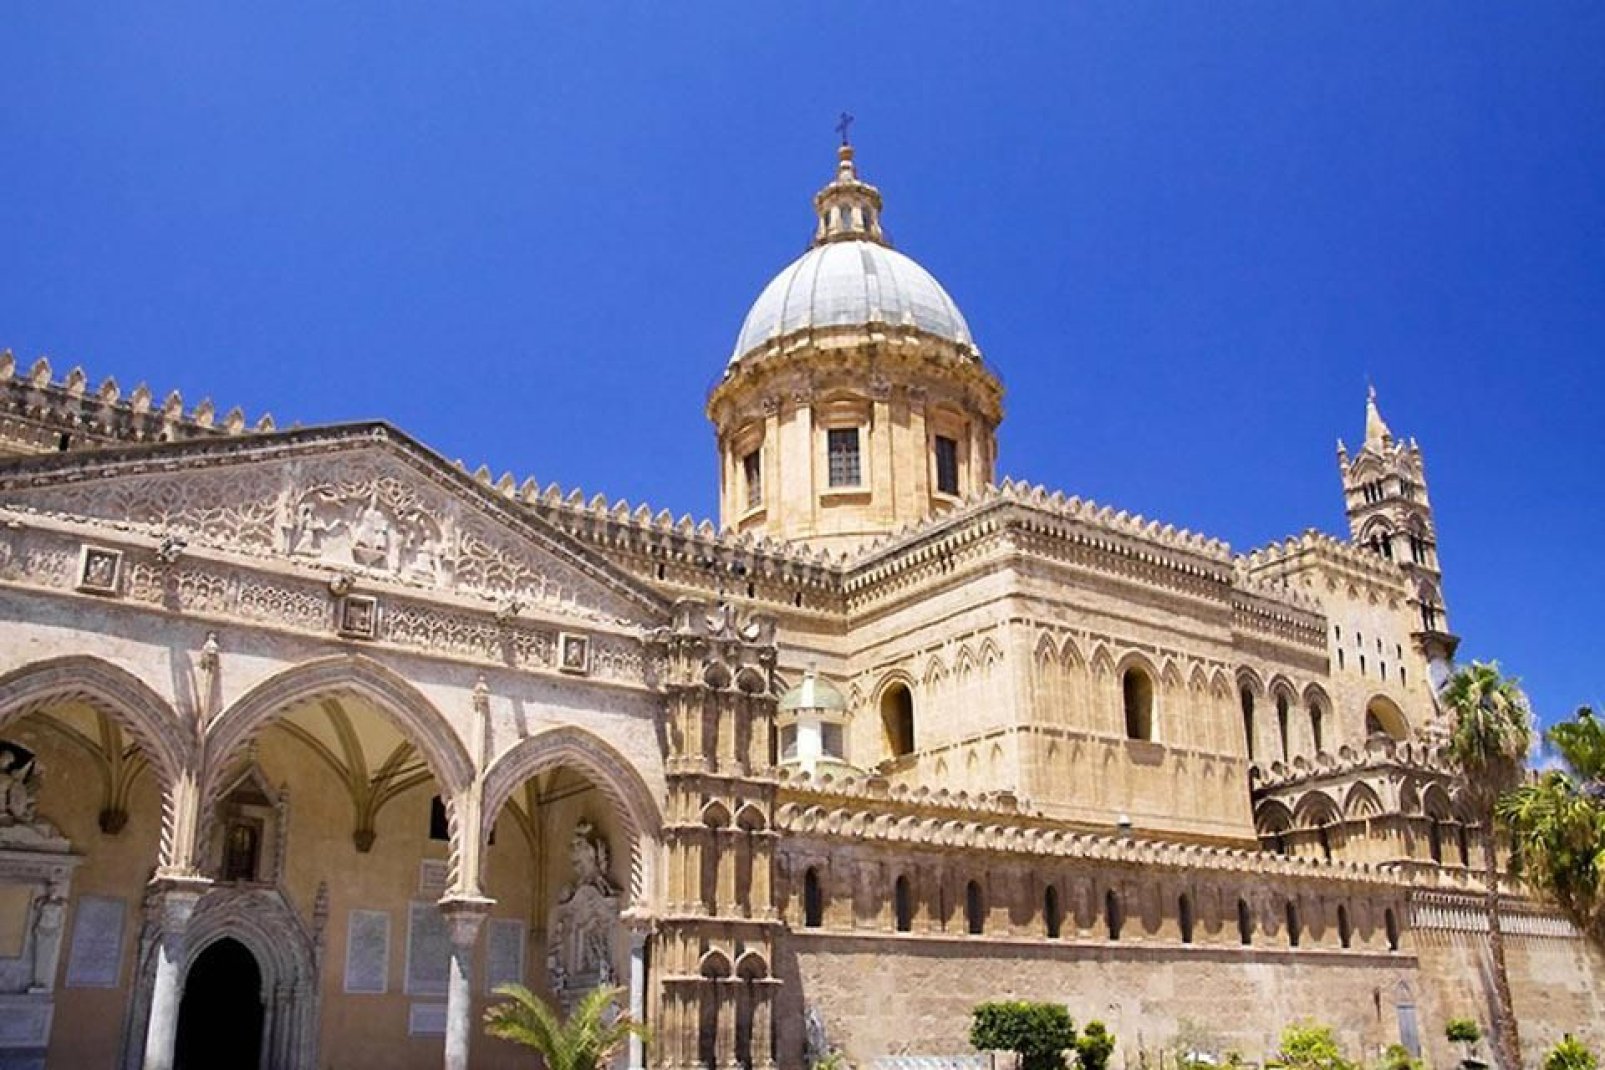 Die Kathedrale von Palermo, Maria Santissima Assunta (Heiligste zum Himmel emporgestiegene Maria), ist ein grandioses Bauwerk, das verschiedene Baustile in sich vereint.